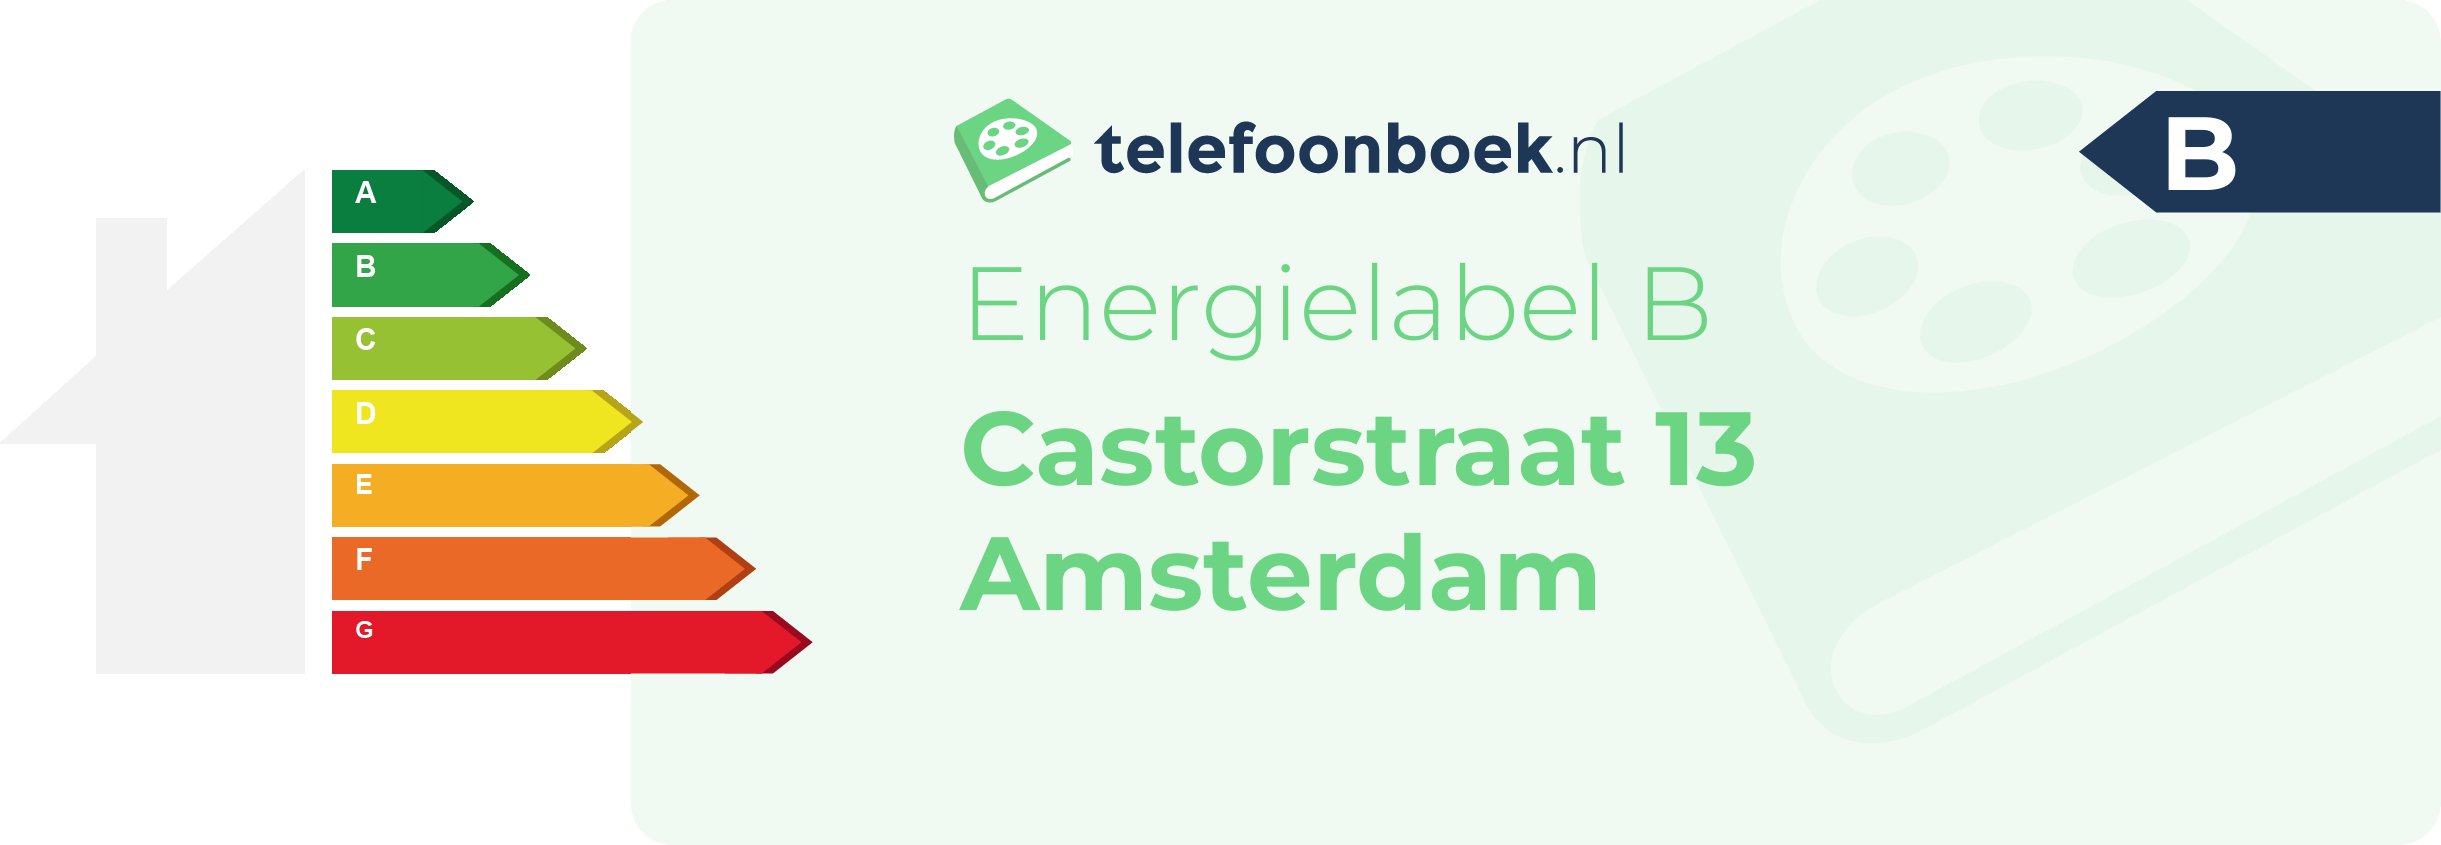 Energielabel Castorstraat 13 Amsterdam